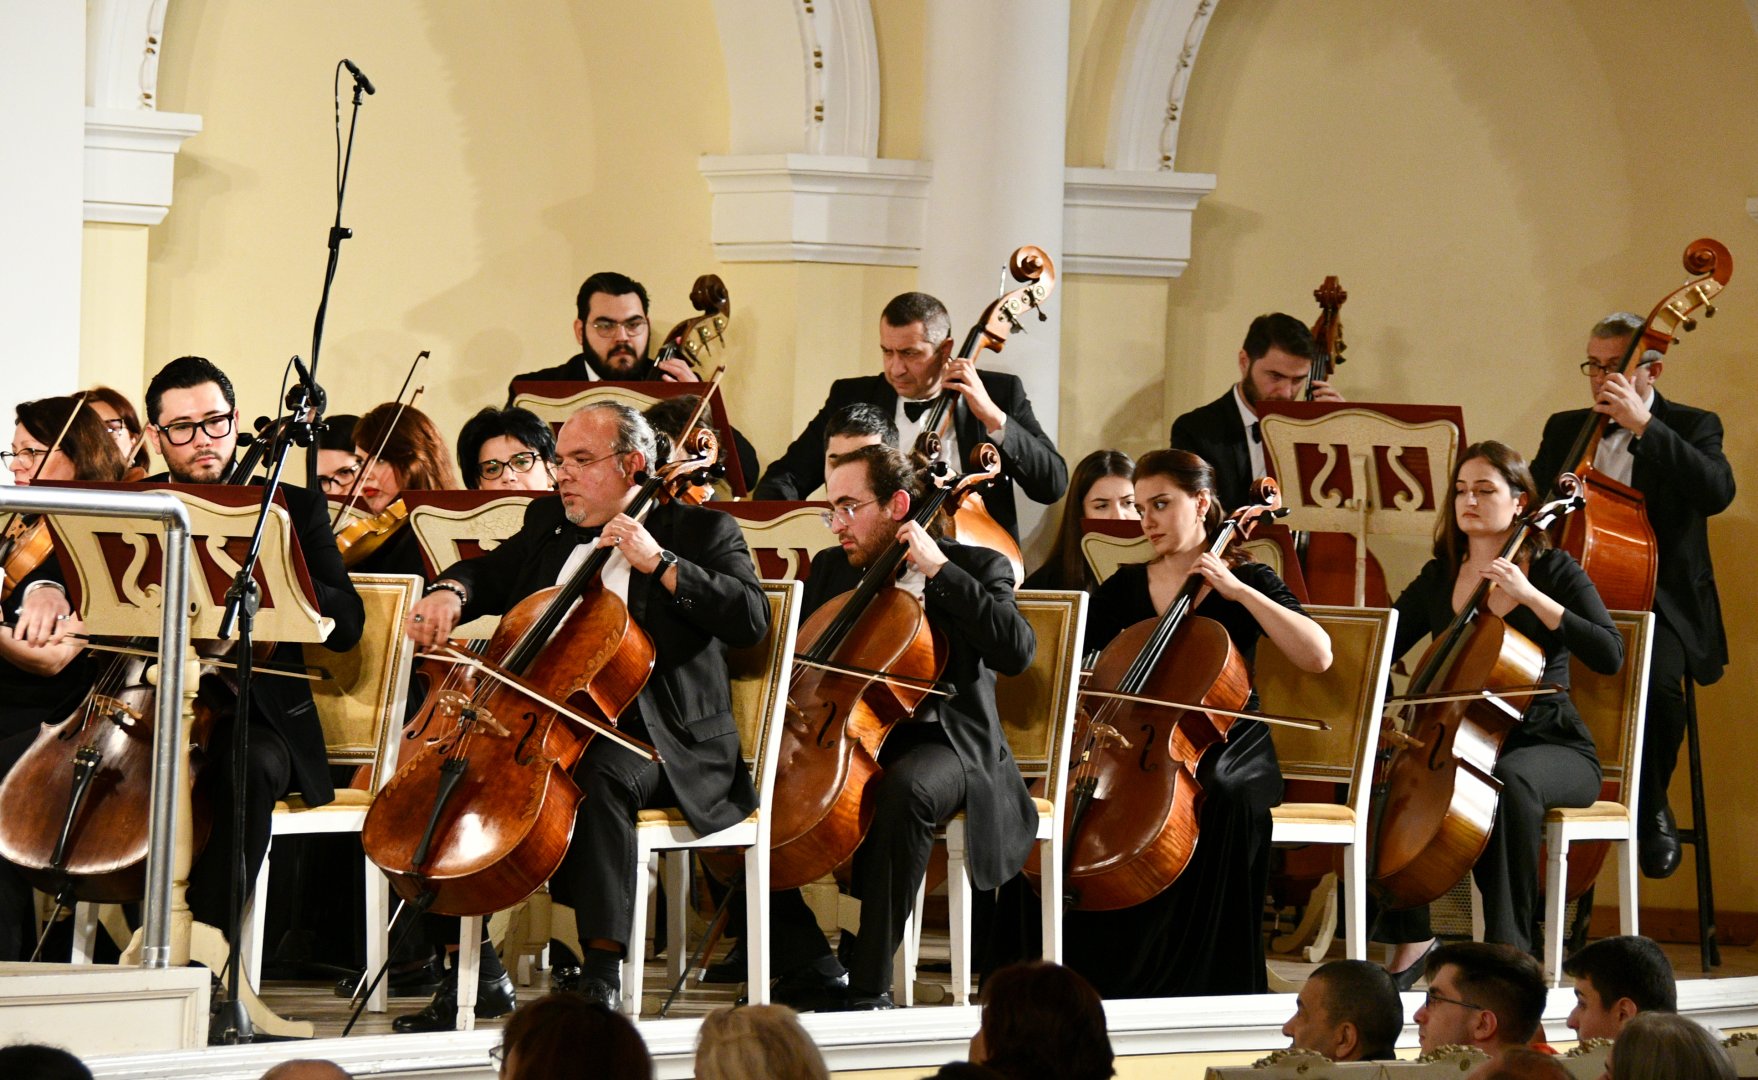 В Баку состоялся концерт, посвященный 180-летию Николая Римского-Корсакова (ФОТО)